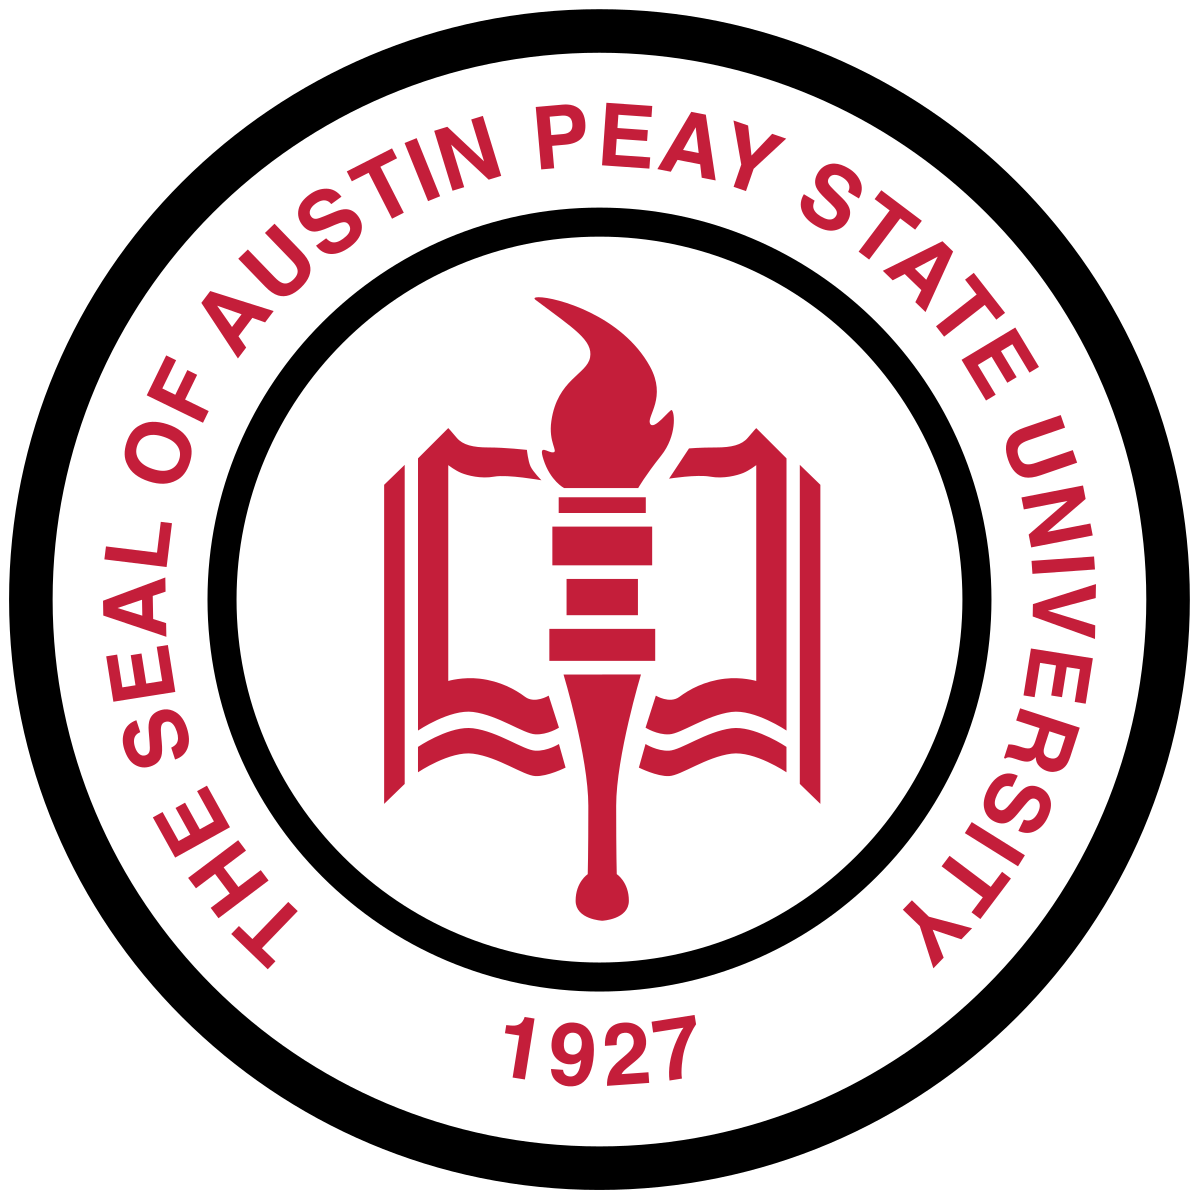 Austin Peay State University - Wikipedia